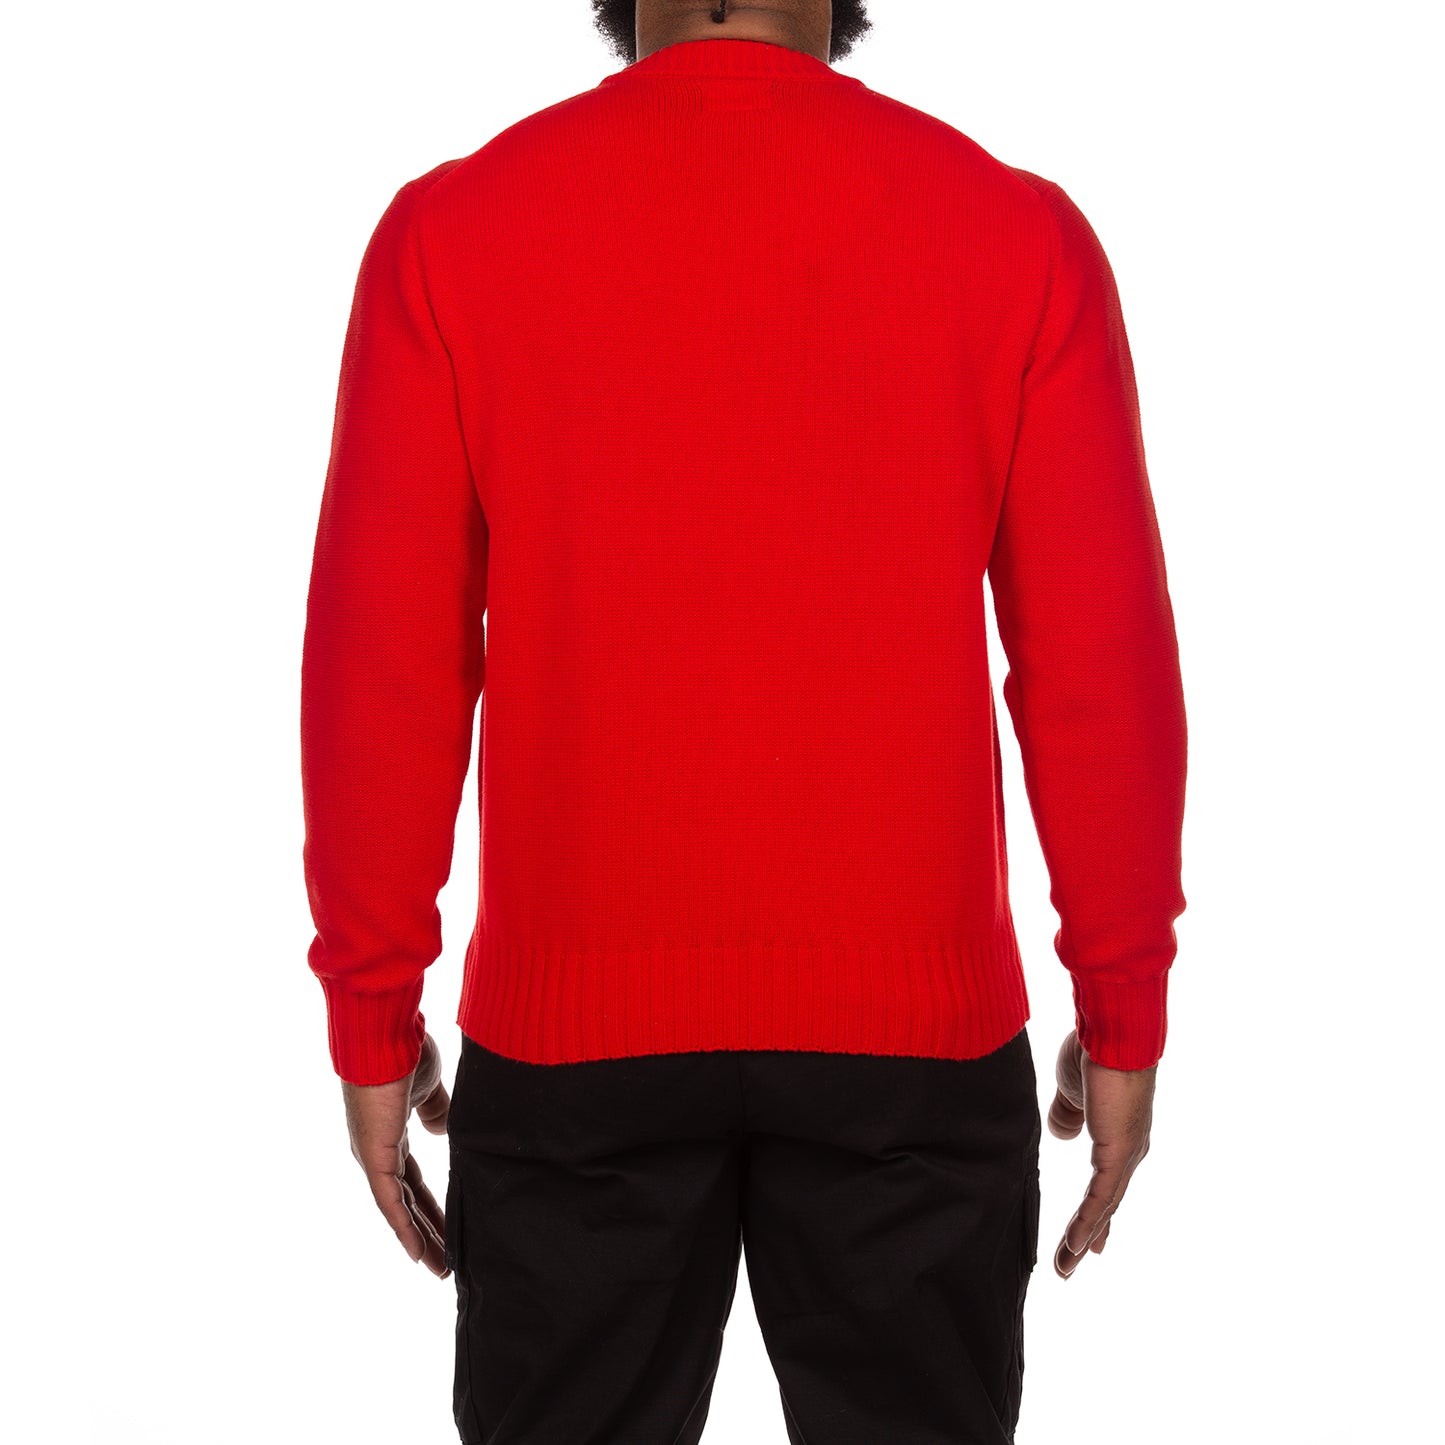 HG Guap Sweater